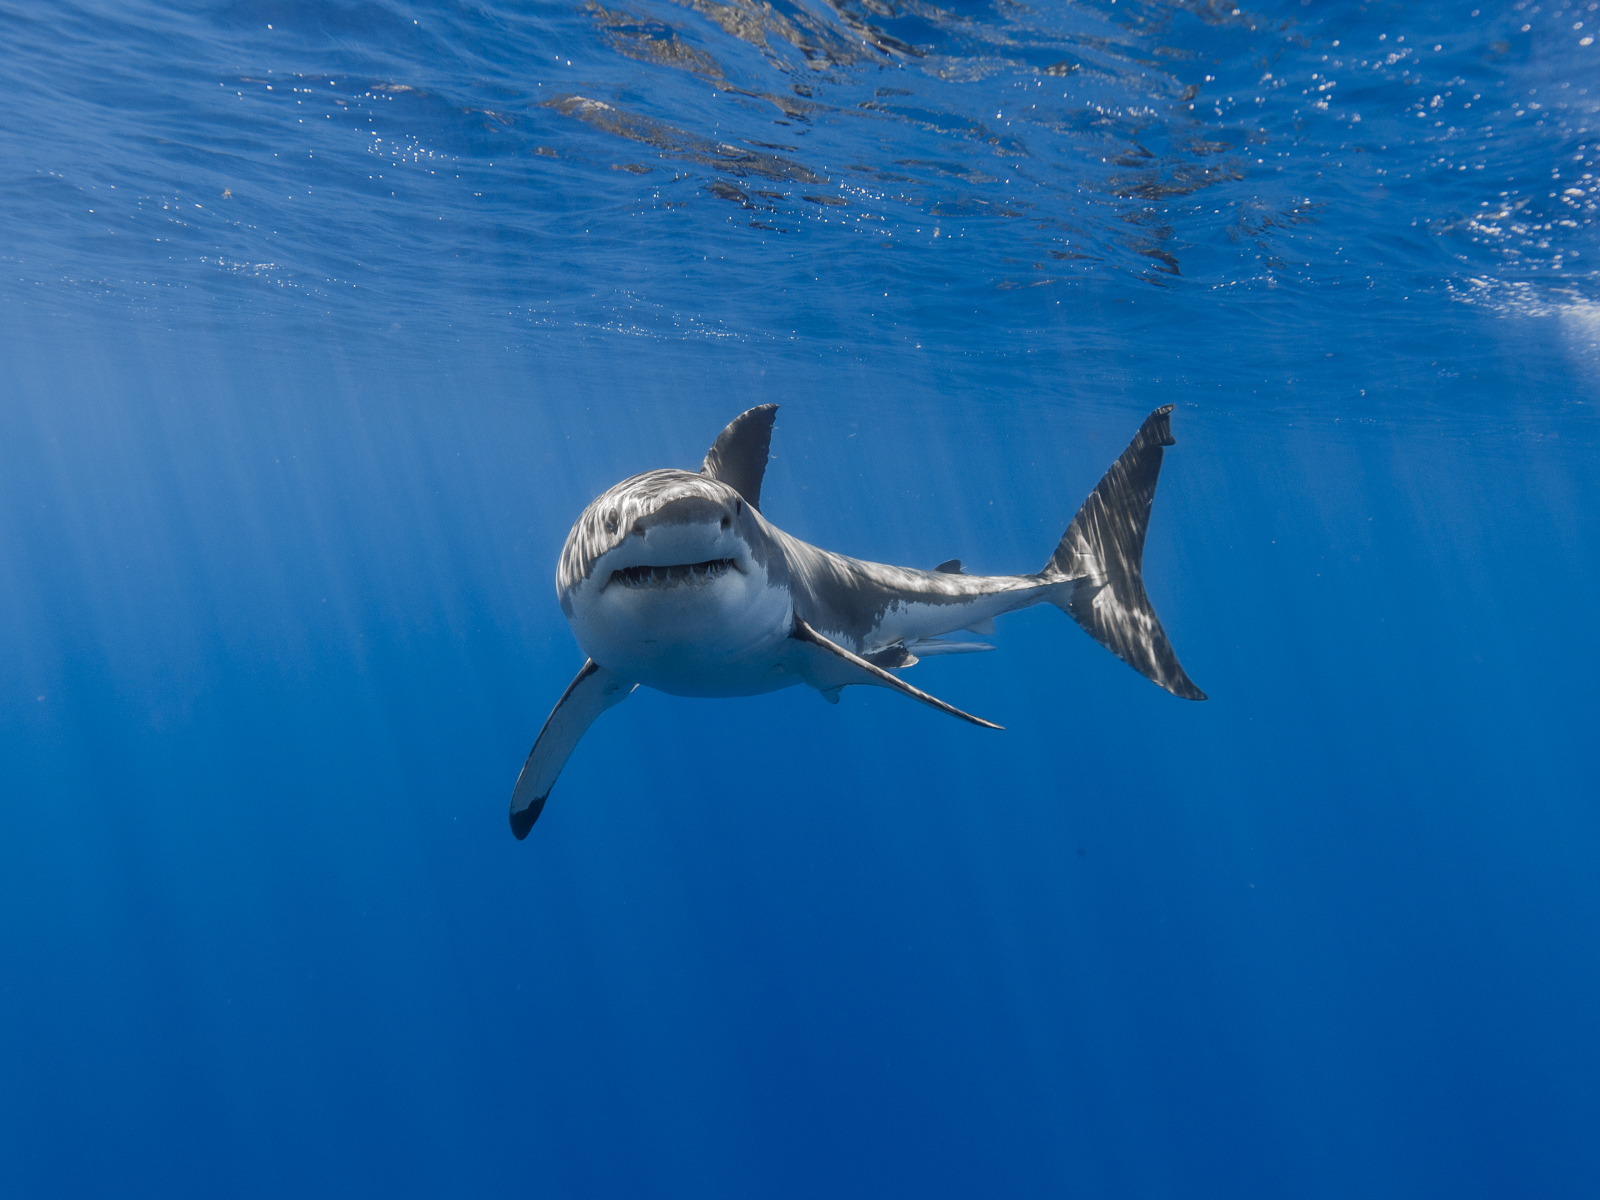 Large predatory shark swims under the water